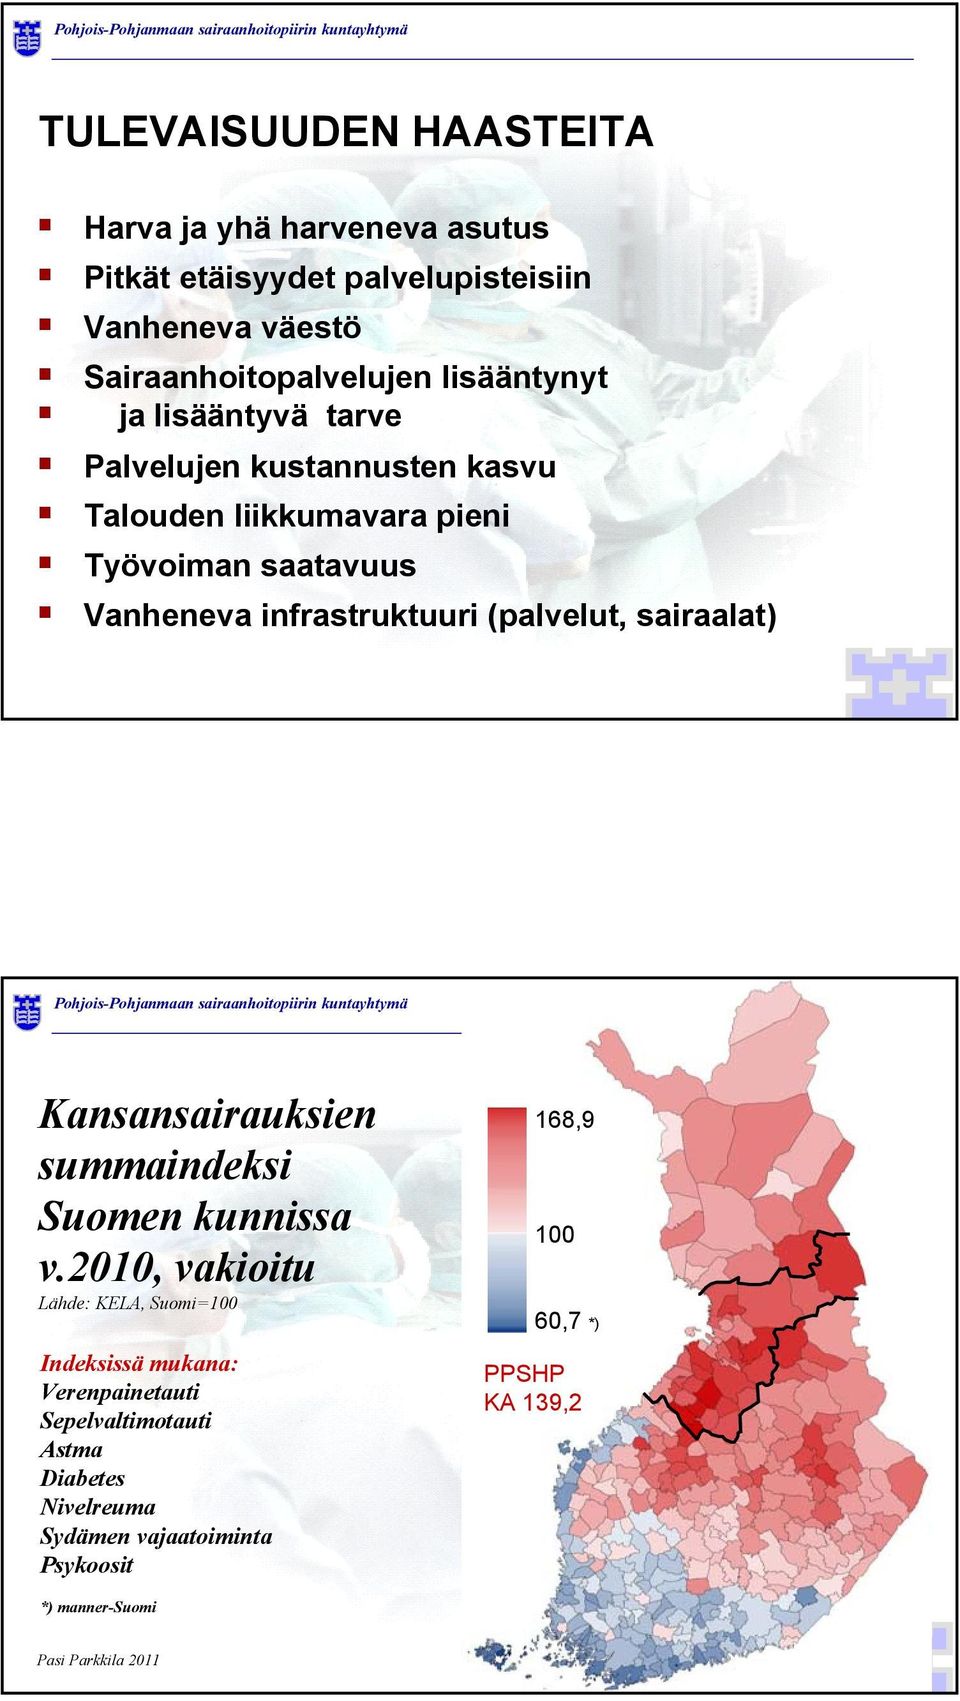 infrastruktuuri (palvelut, sairaalat) Kansansairauksien summaindeksi Suomen kunnissa v.